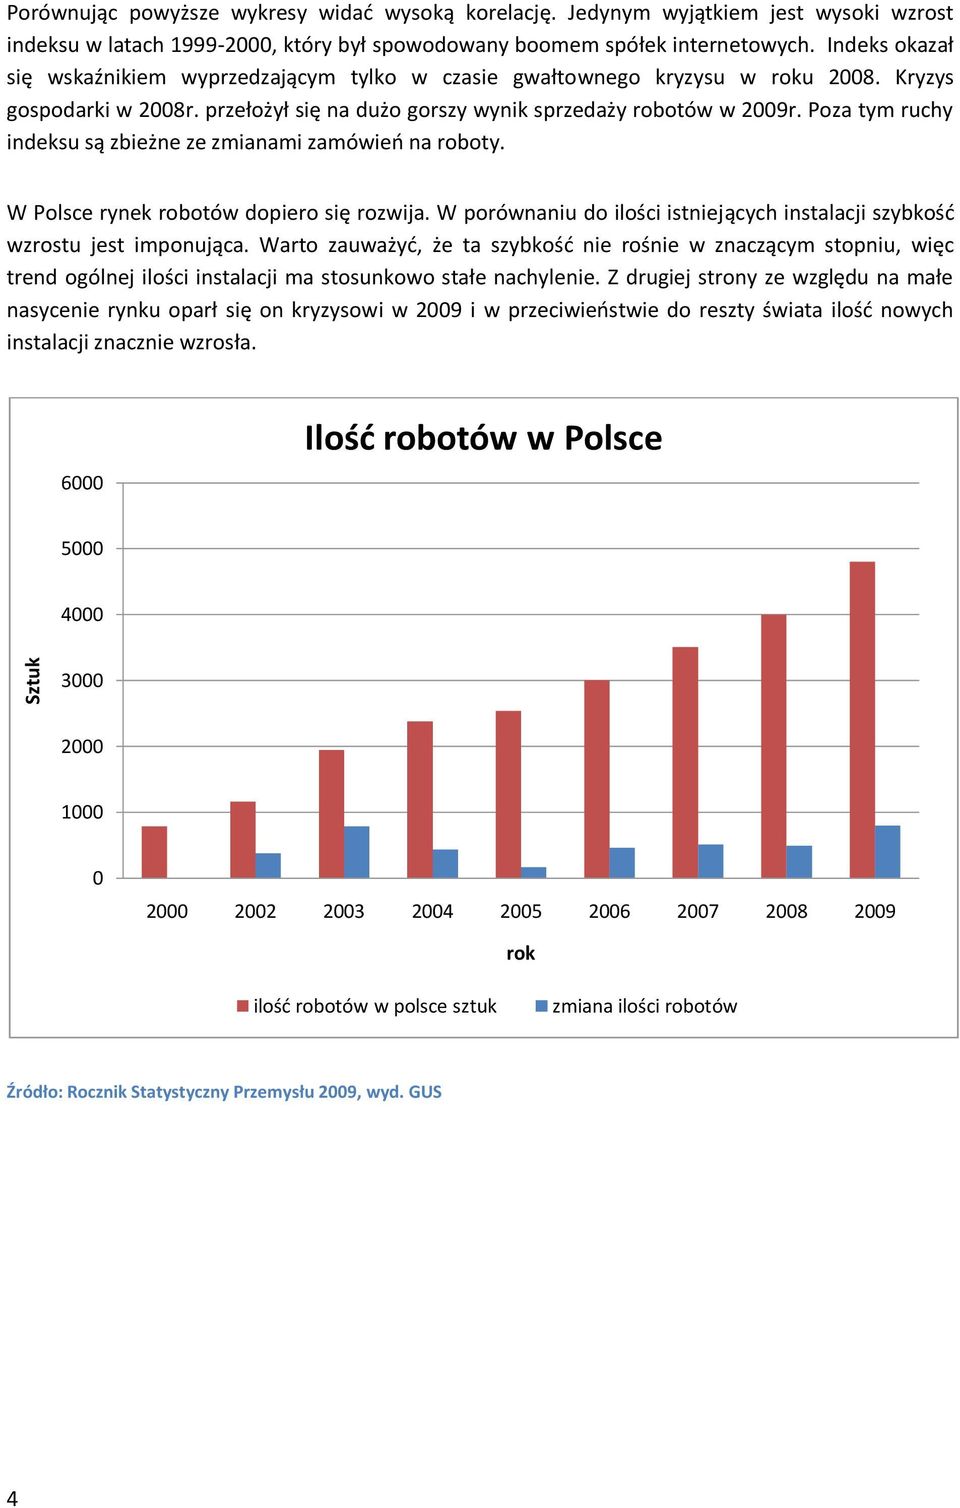 Poza tym ruchy indeksu są zbieżne ze zmianami zamówieo na roboty. W Polsce rynek robotów dopiero się rozwija. W porównaniu do ilości istniejących instalacji szybkośd wzrostu jest imponująca.